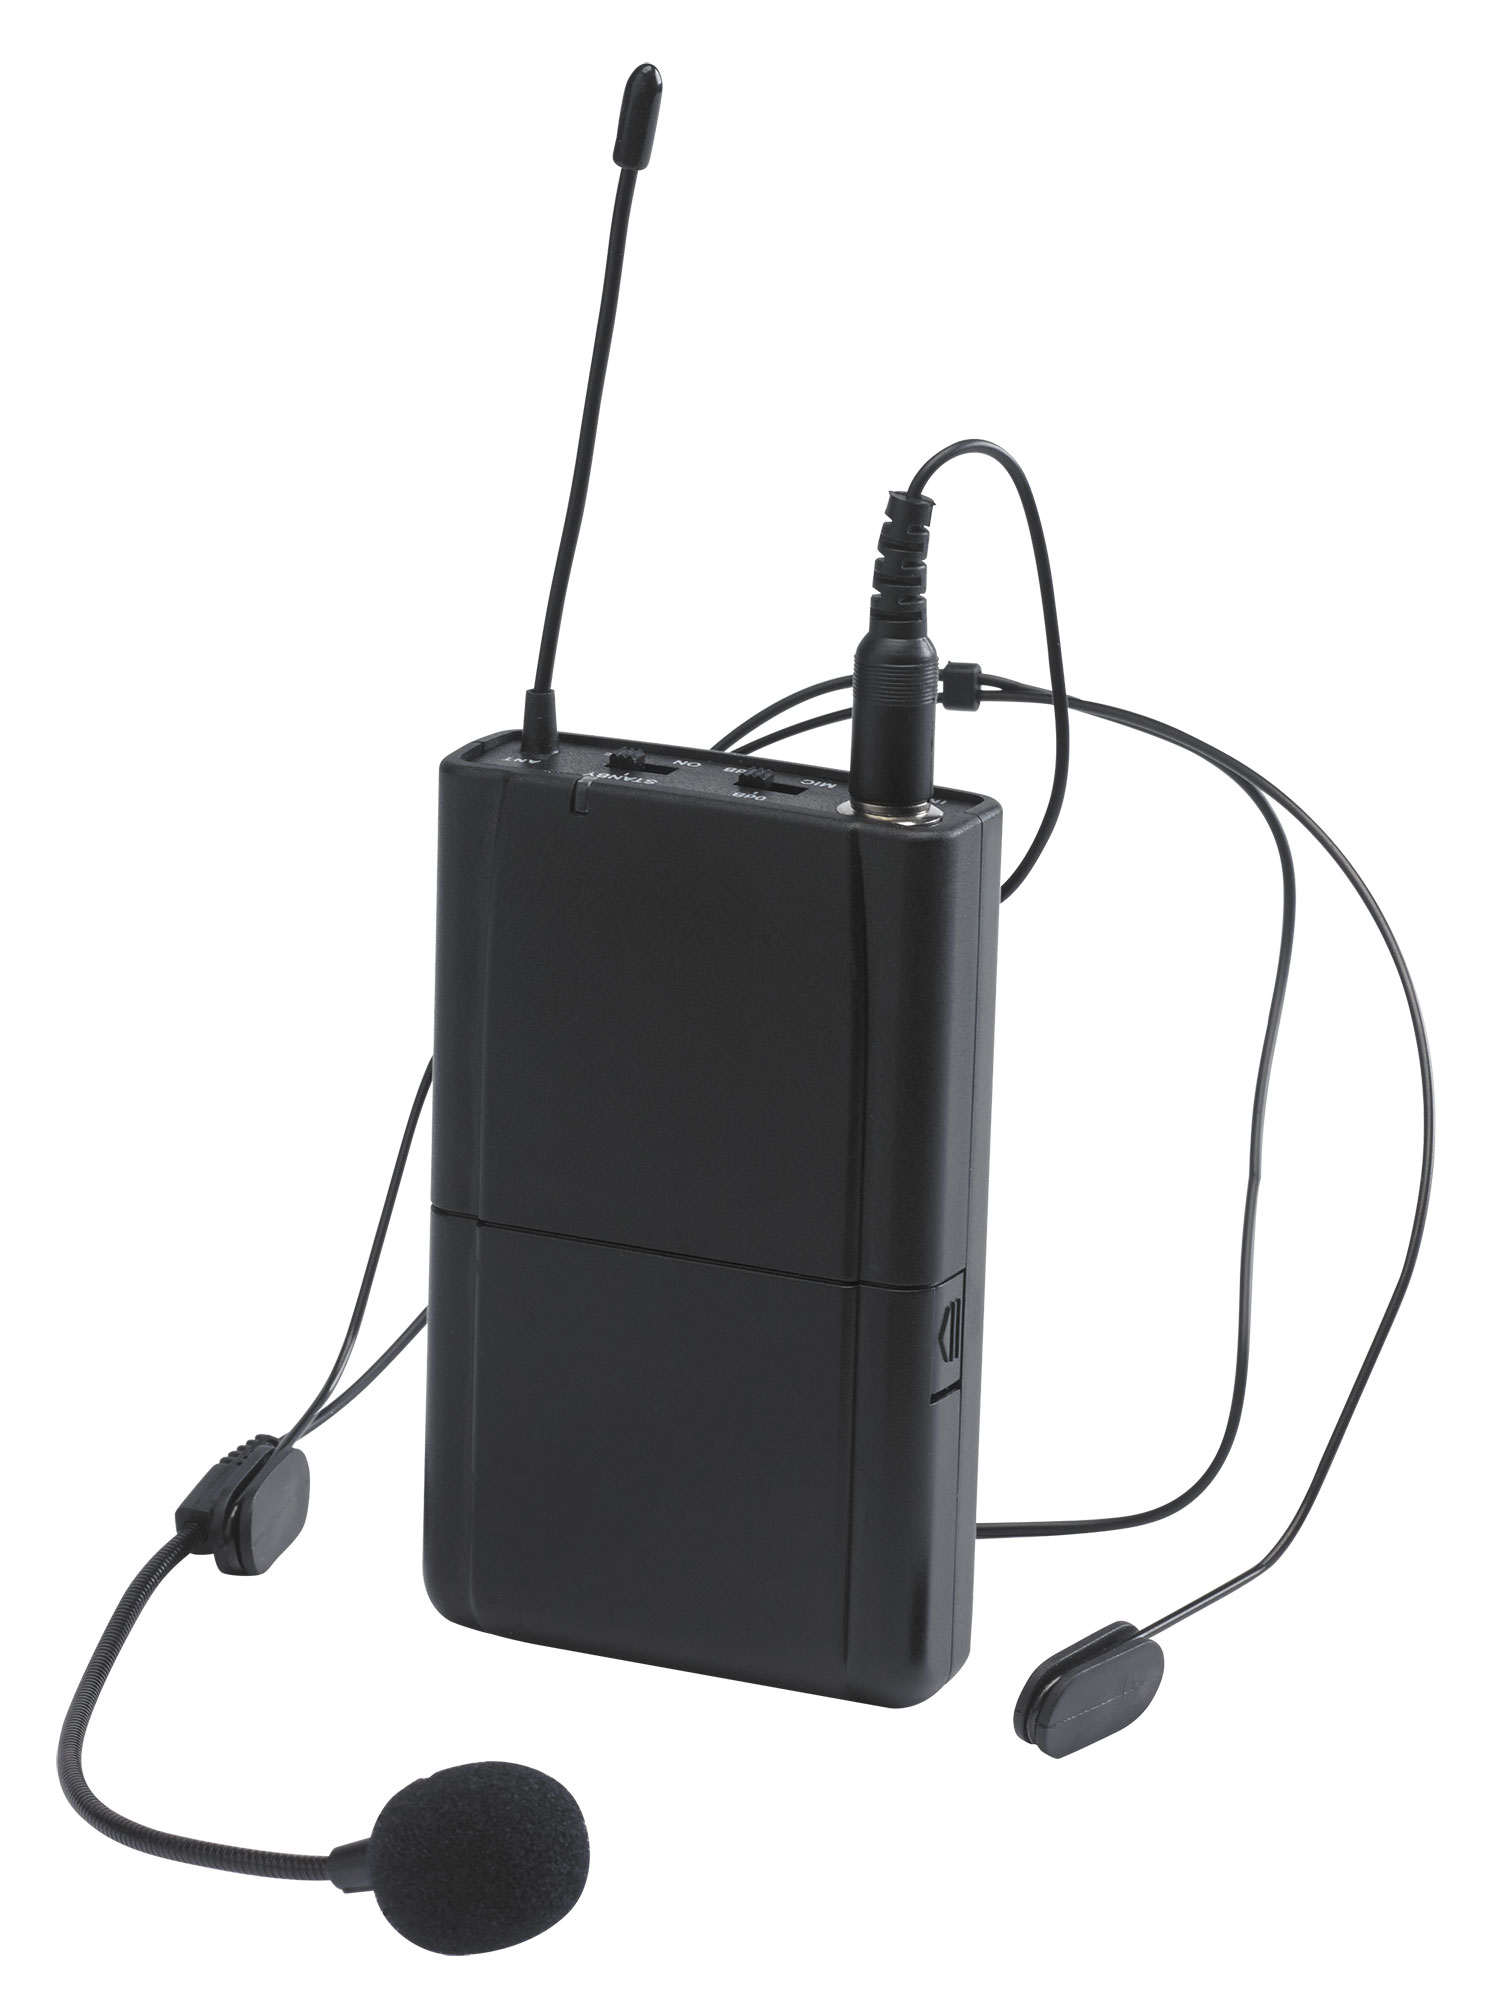 Optional UHF bodypack transmitter and headband microphone - 800MHz range